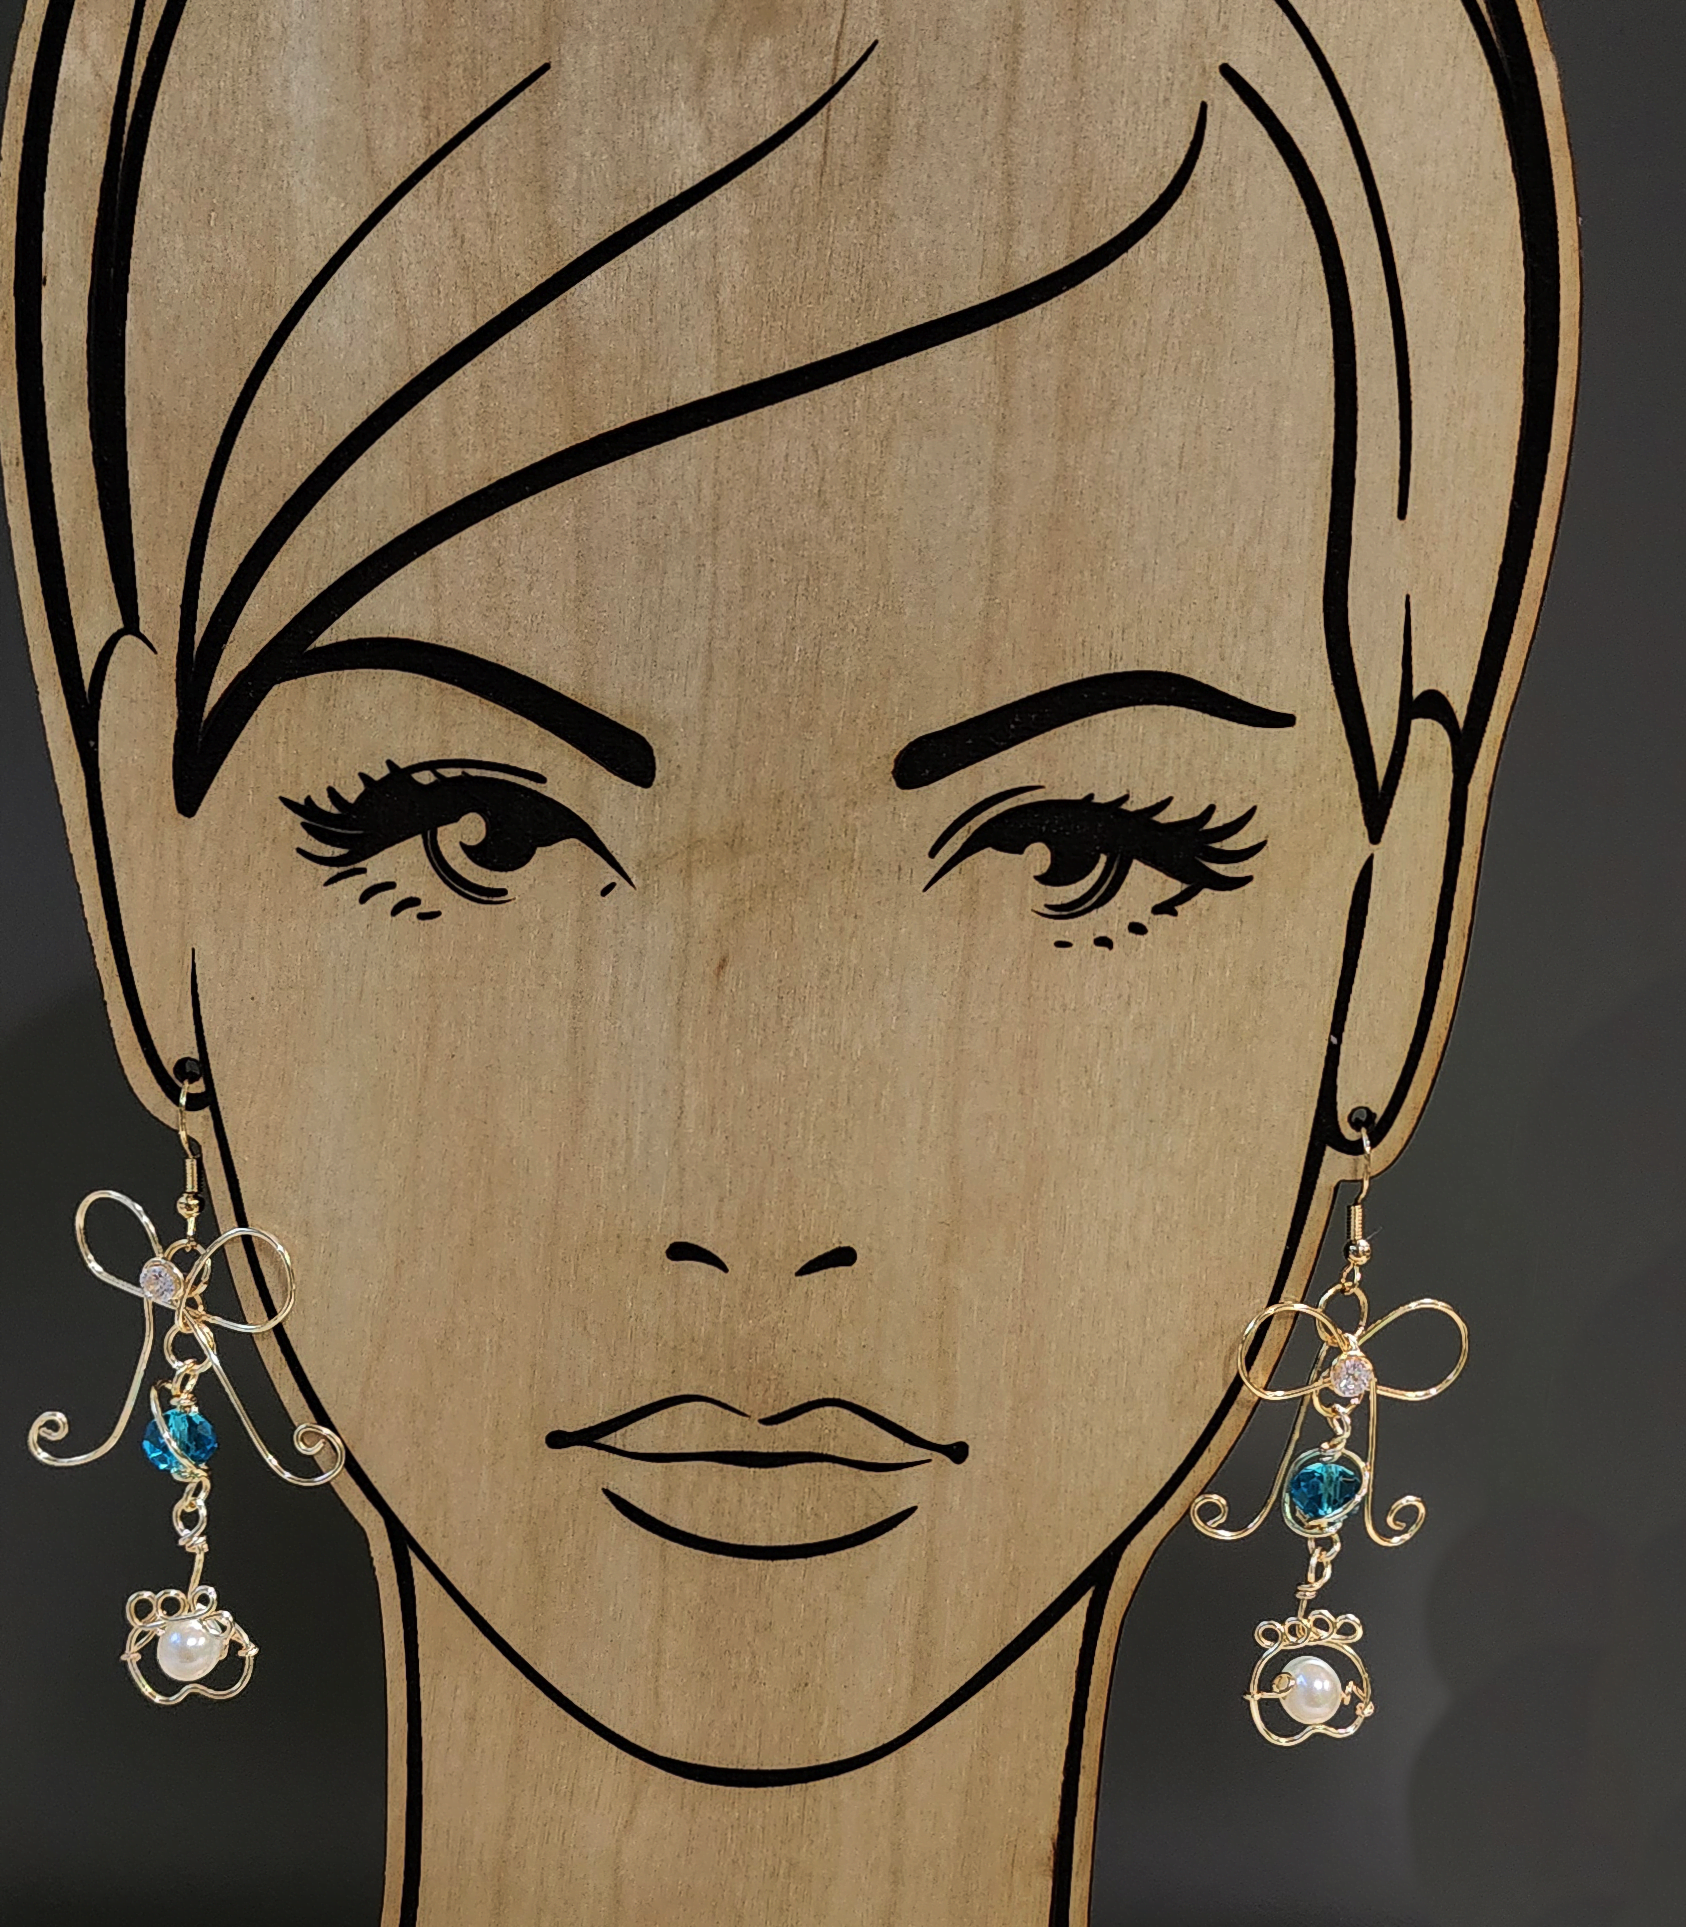 Gold-Bowtie earring dangle